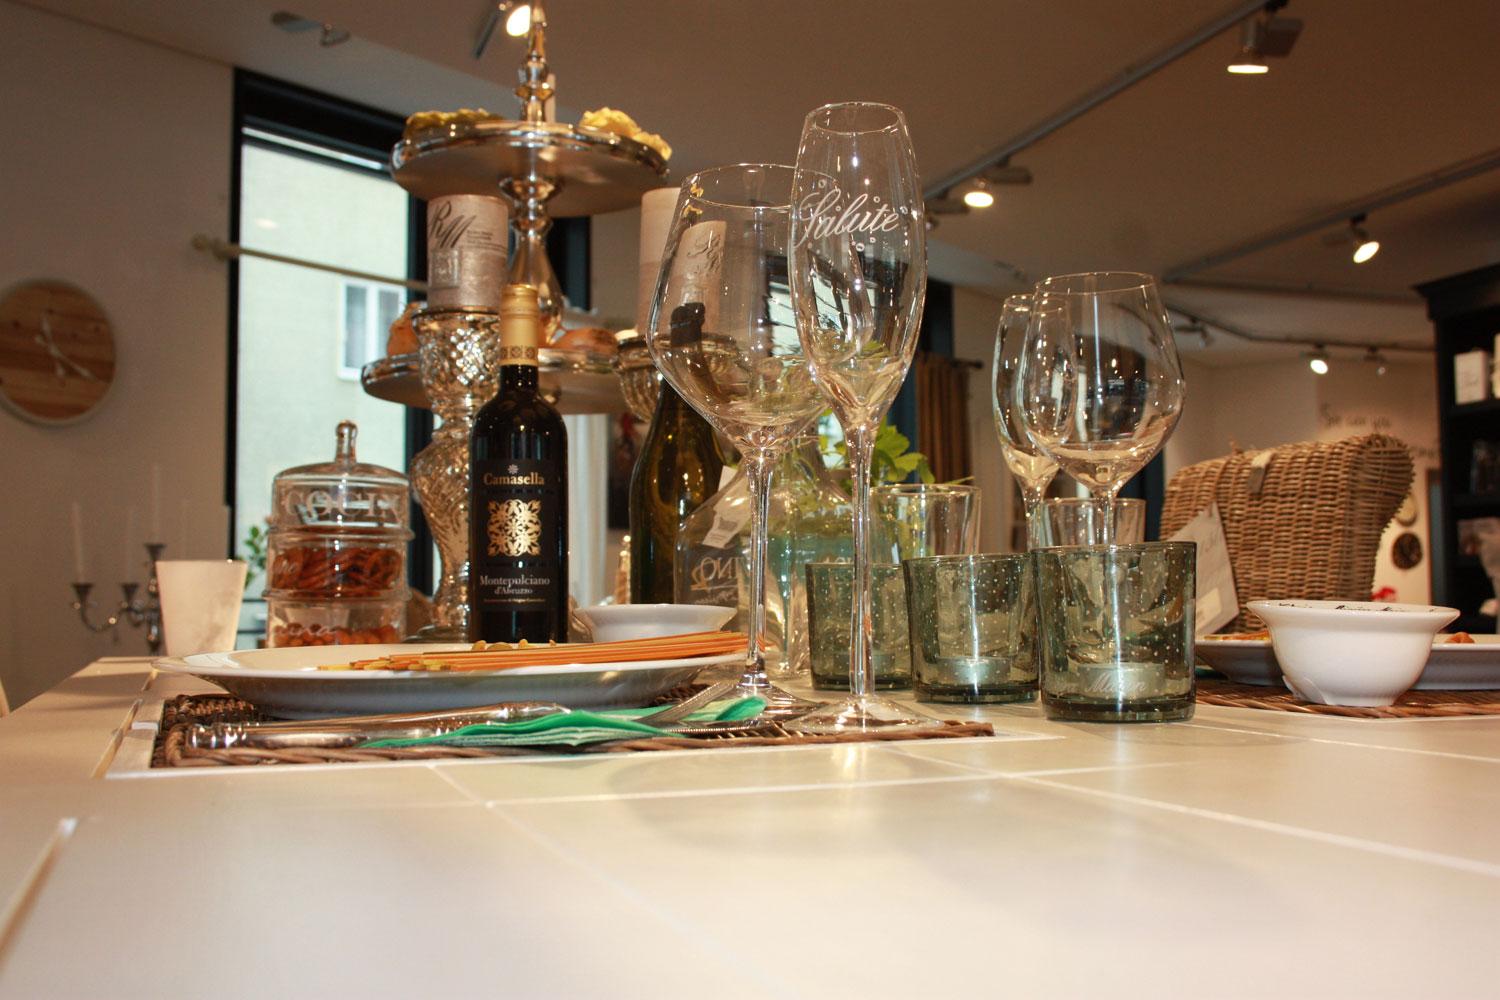 Essen mit Freunden - Stilvoll gedeckter Tisch mit Porzellan von Rivièra Maison #tisch #tischdeko #etagère #rivieramaison ©La Maison - Wohnen & Stoffe